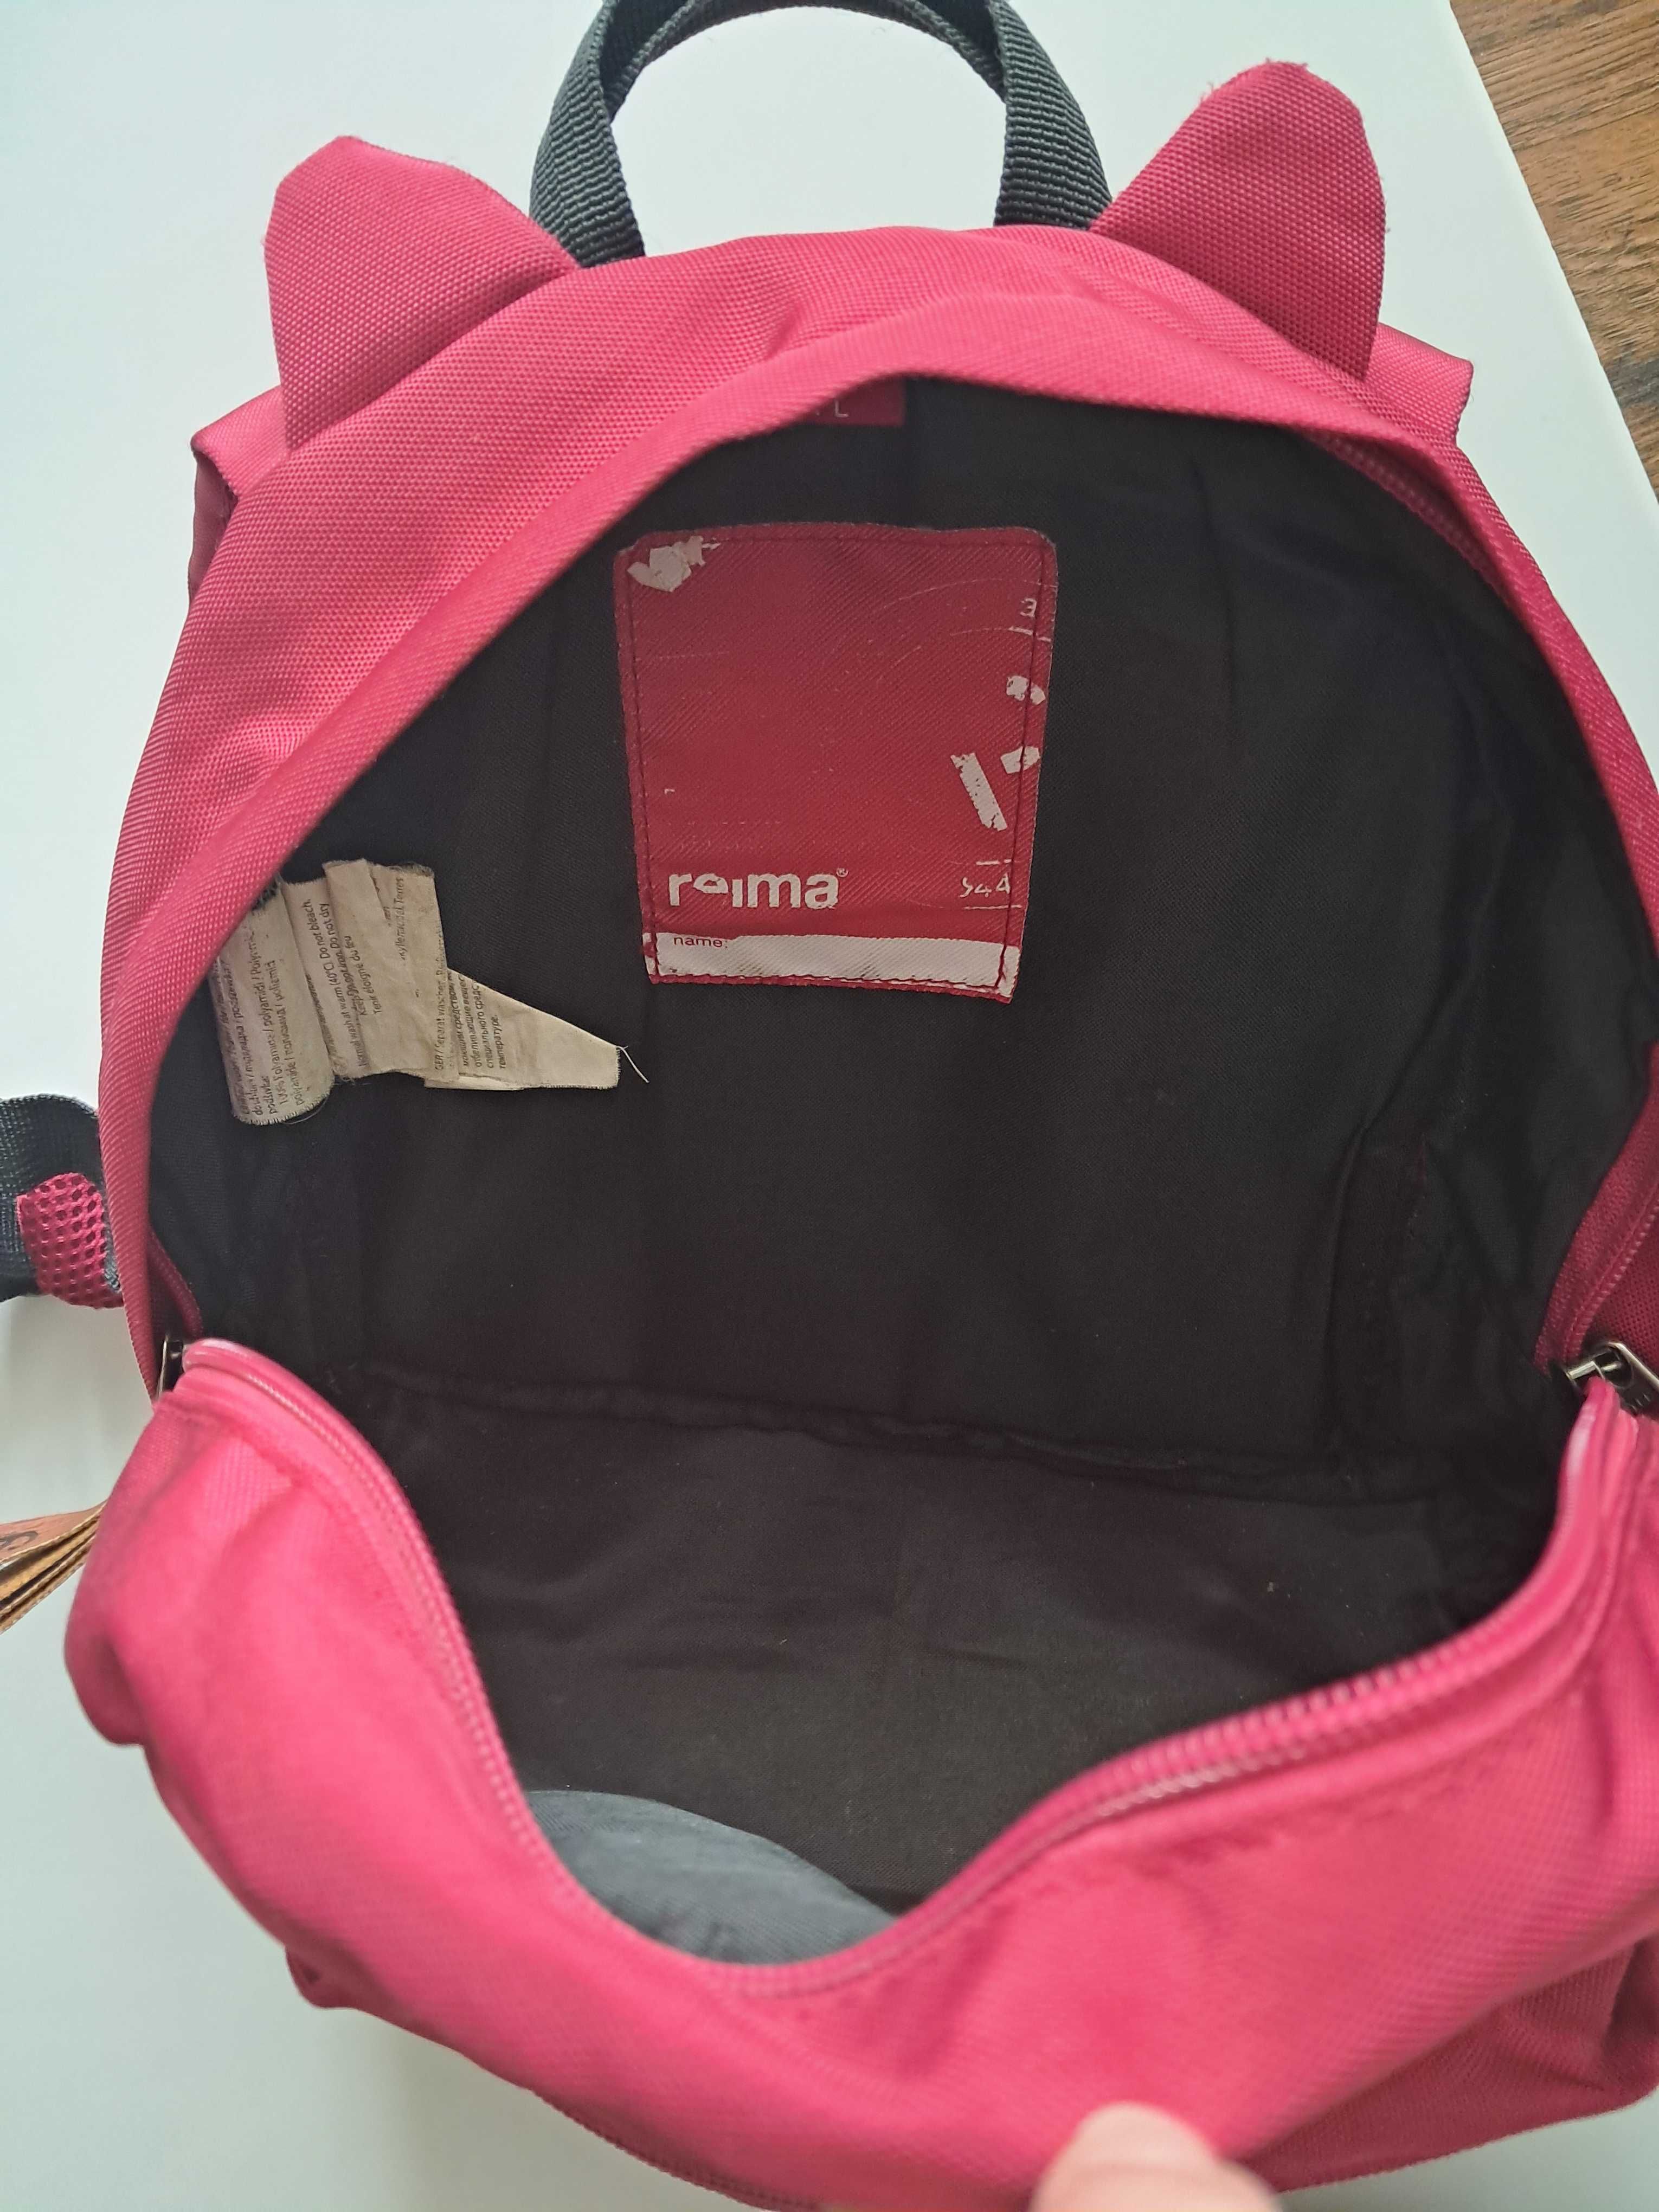 Plecak Reima dla dziecka